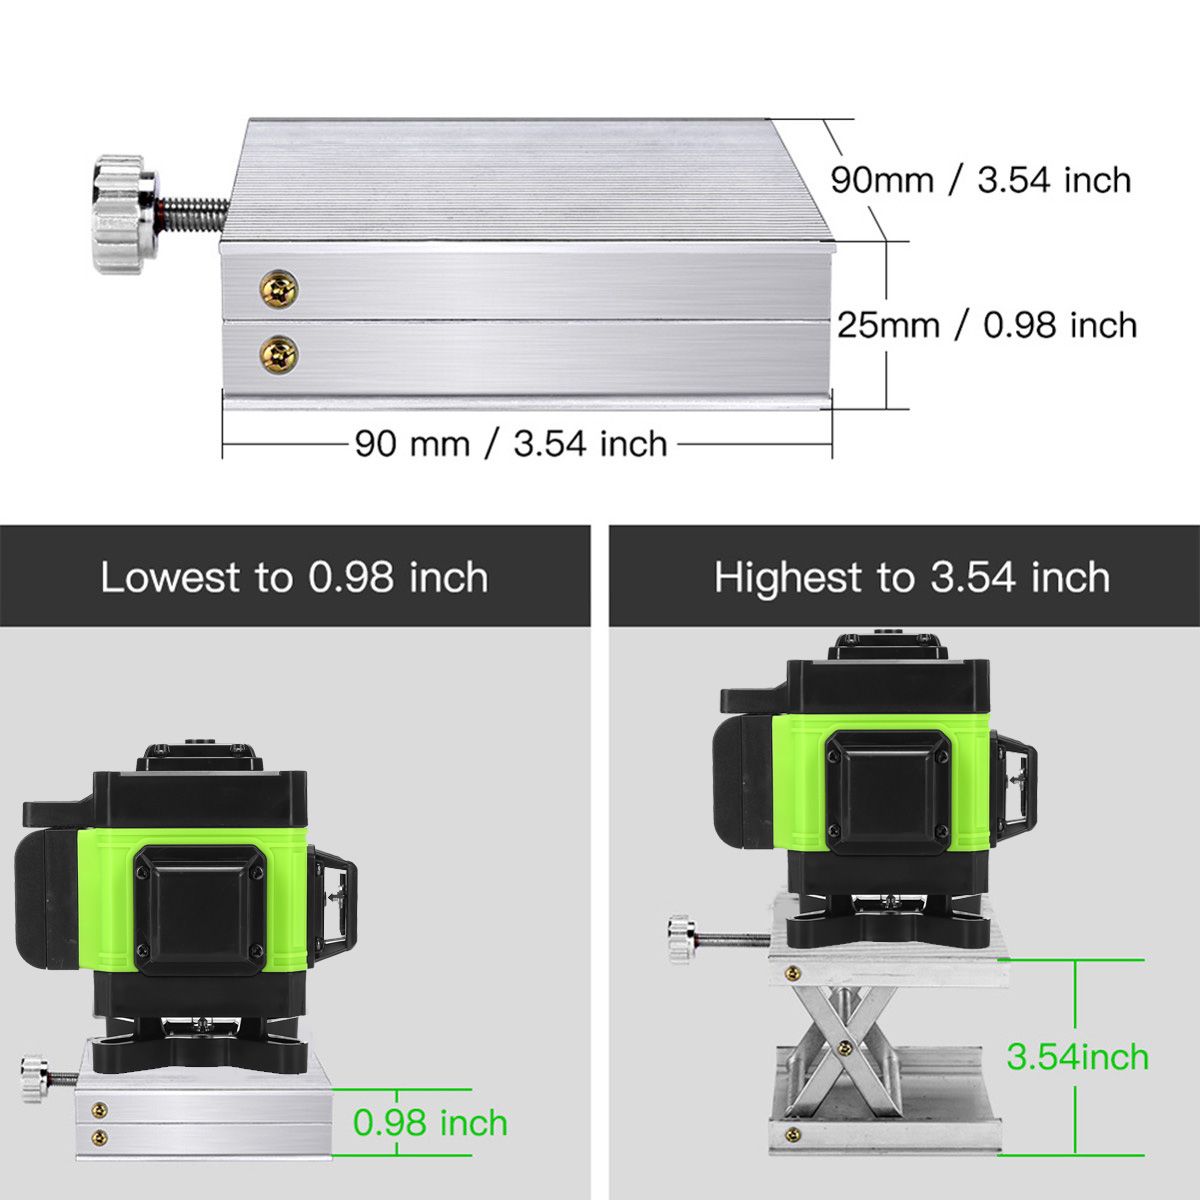 1216-Line-Green-Light-Laser-Level-Digital-Self-Leveling-360deg-Rotary-Measure-Tool-1717899